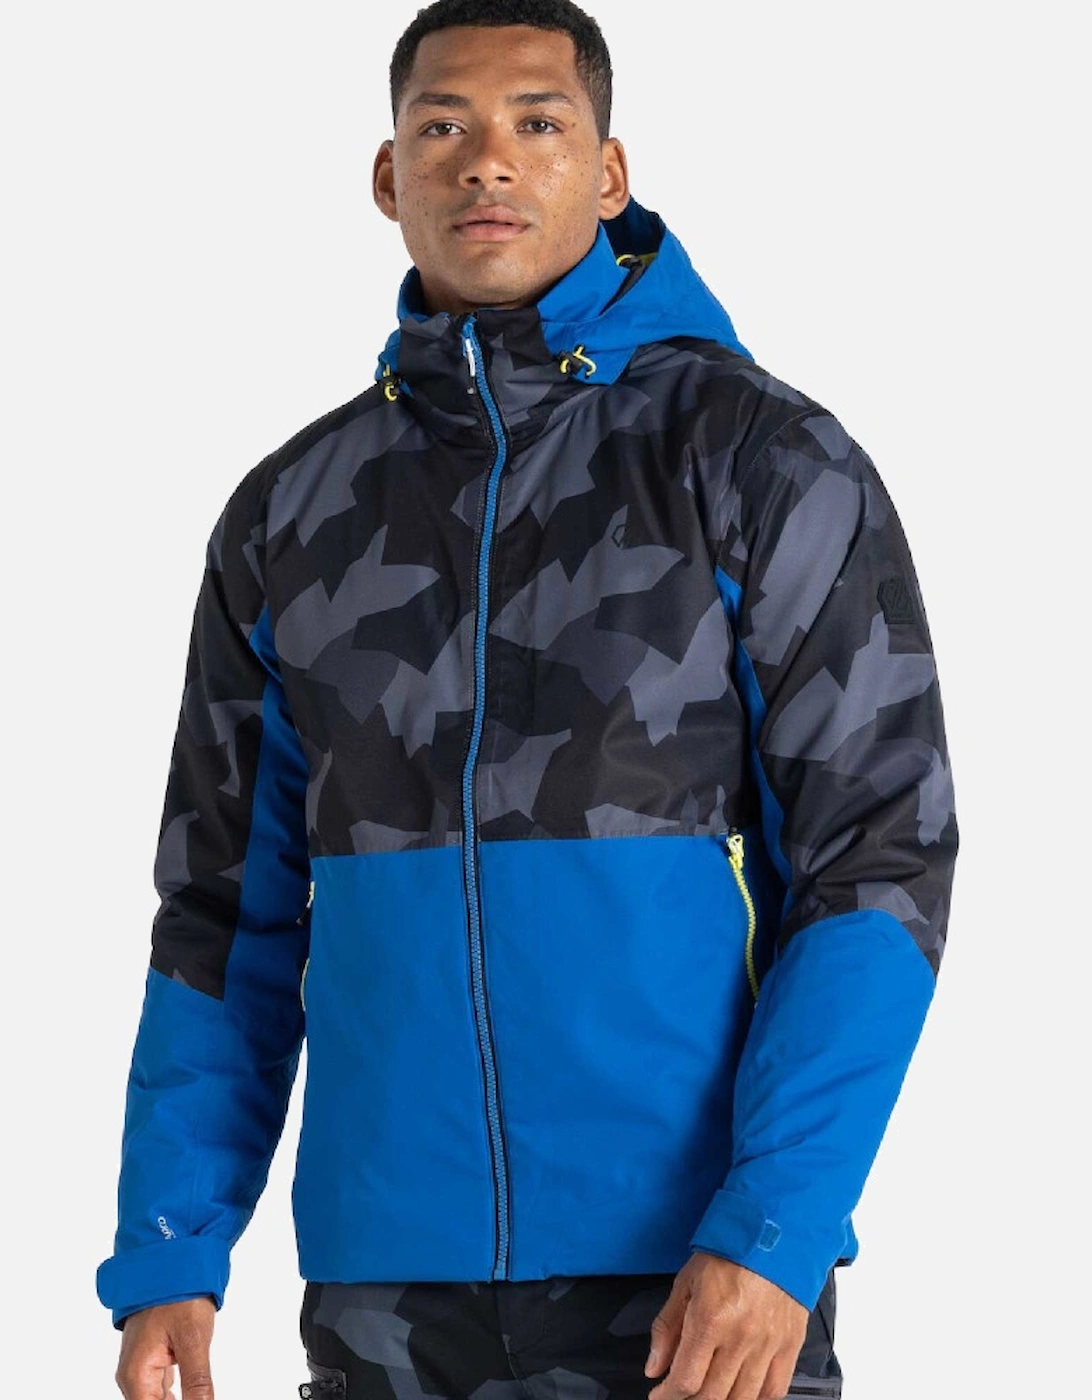 Mens Precision Waterproof Hooded Winter Ski Jacket, 8 of 7